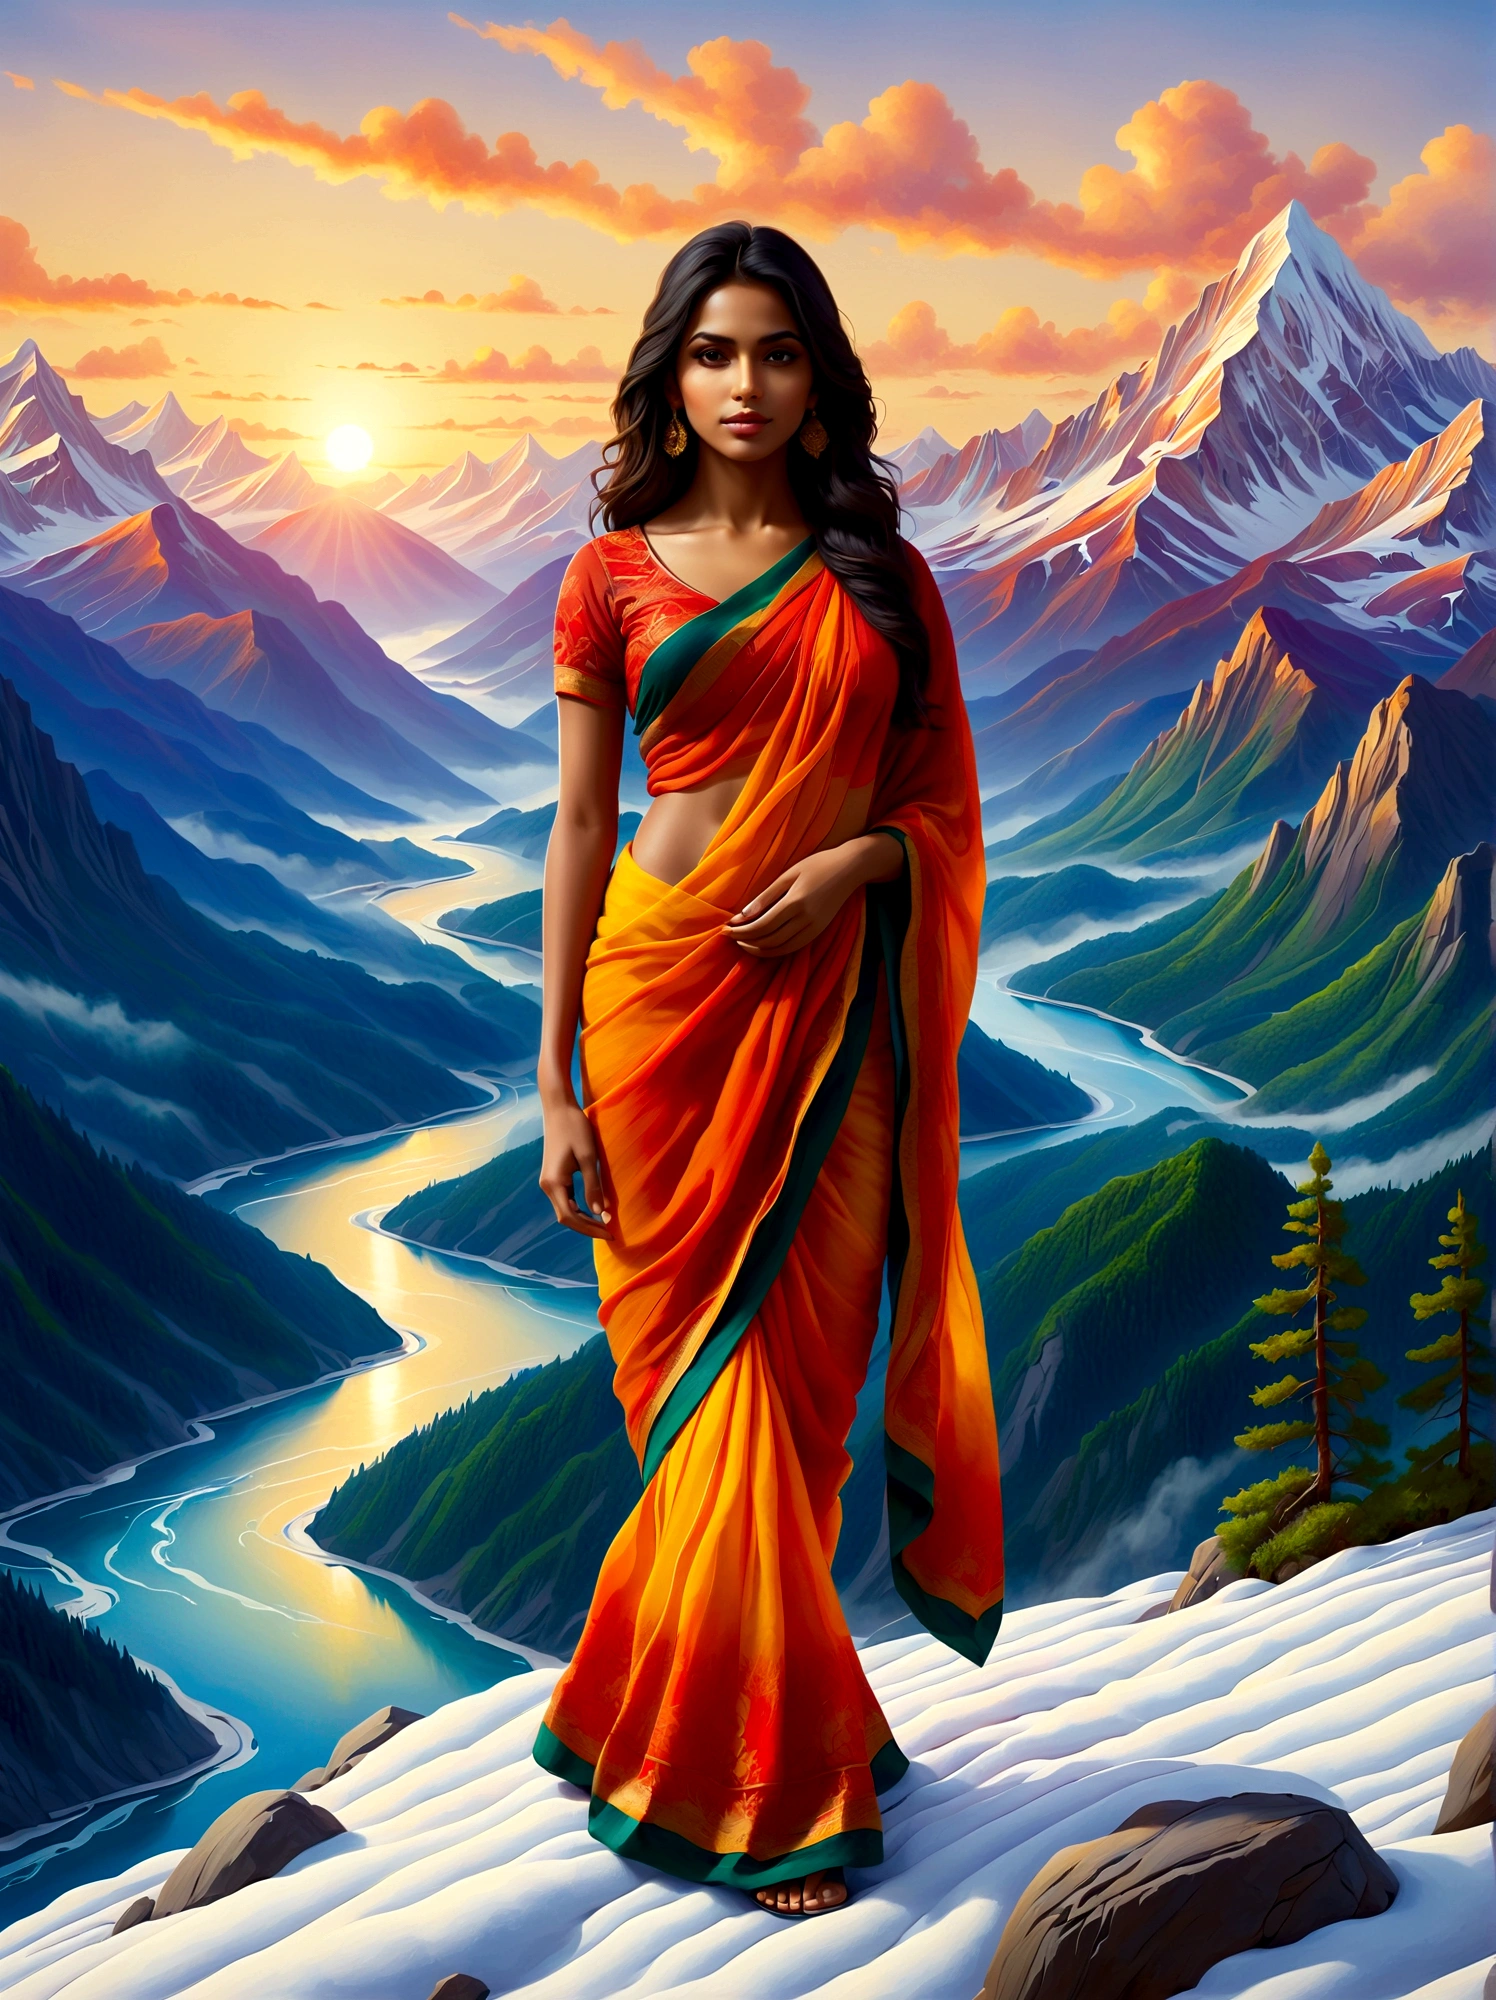 (日の出時刻:1.6), 雪を頂いた山の頂上に立つ南アジアの少女を描いた油絵を描きます. 彼女は、緑豊かな森に囲まれた周囲の壮大な景色を眺めている。, 曲がりくねった川, 霧に包まれたそびえ立つ山々. 太陽に照らされた明るい, 景色はオレンジ色に染まる, 黄色, そして赤. 作品全体は、手つかずの自然の中での孤独の静けさと、山岳風景の畏敬の念を起こさせる壮大さの両方を包含するものであるべきである。